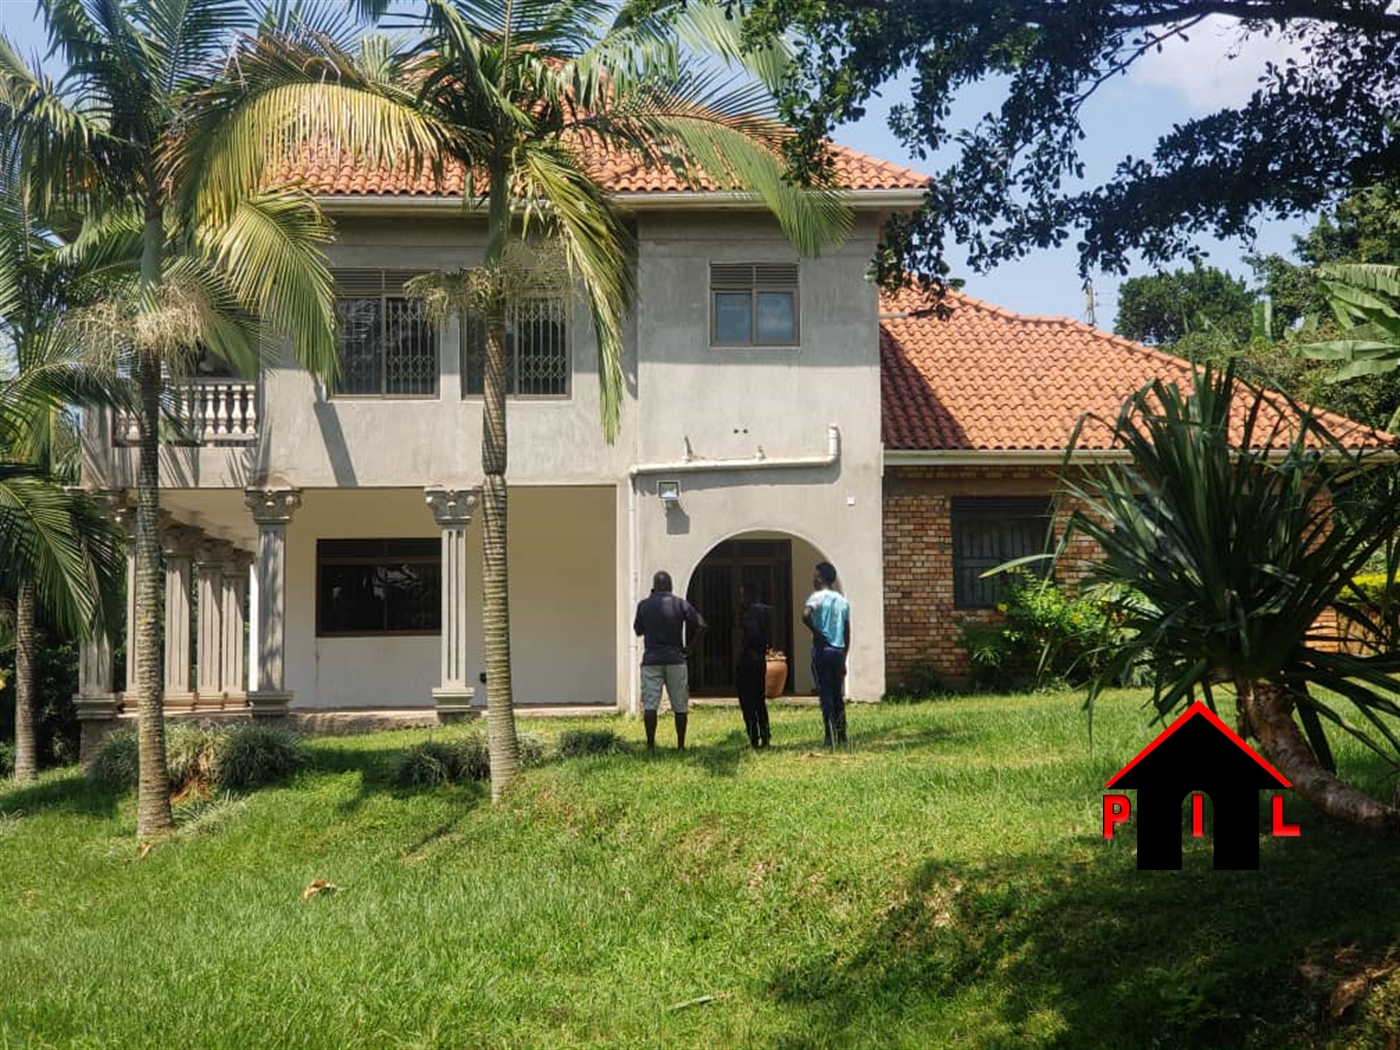 Storeyed house for sale in Namulanda Kampala